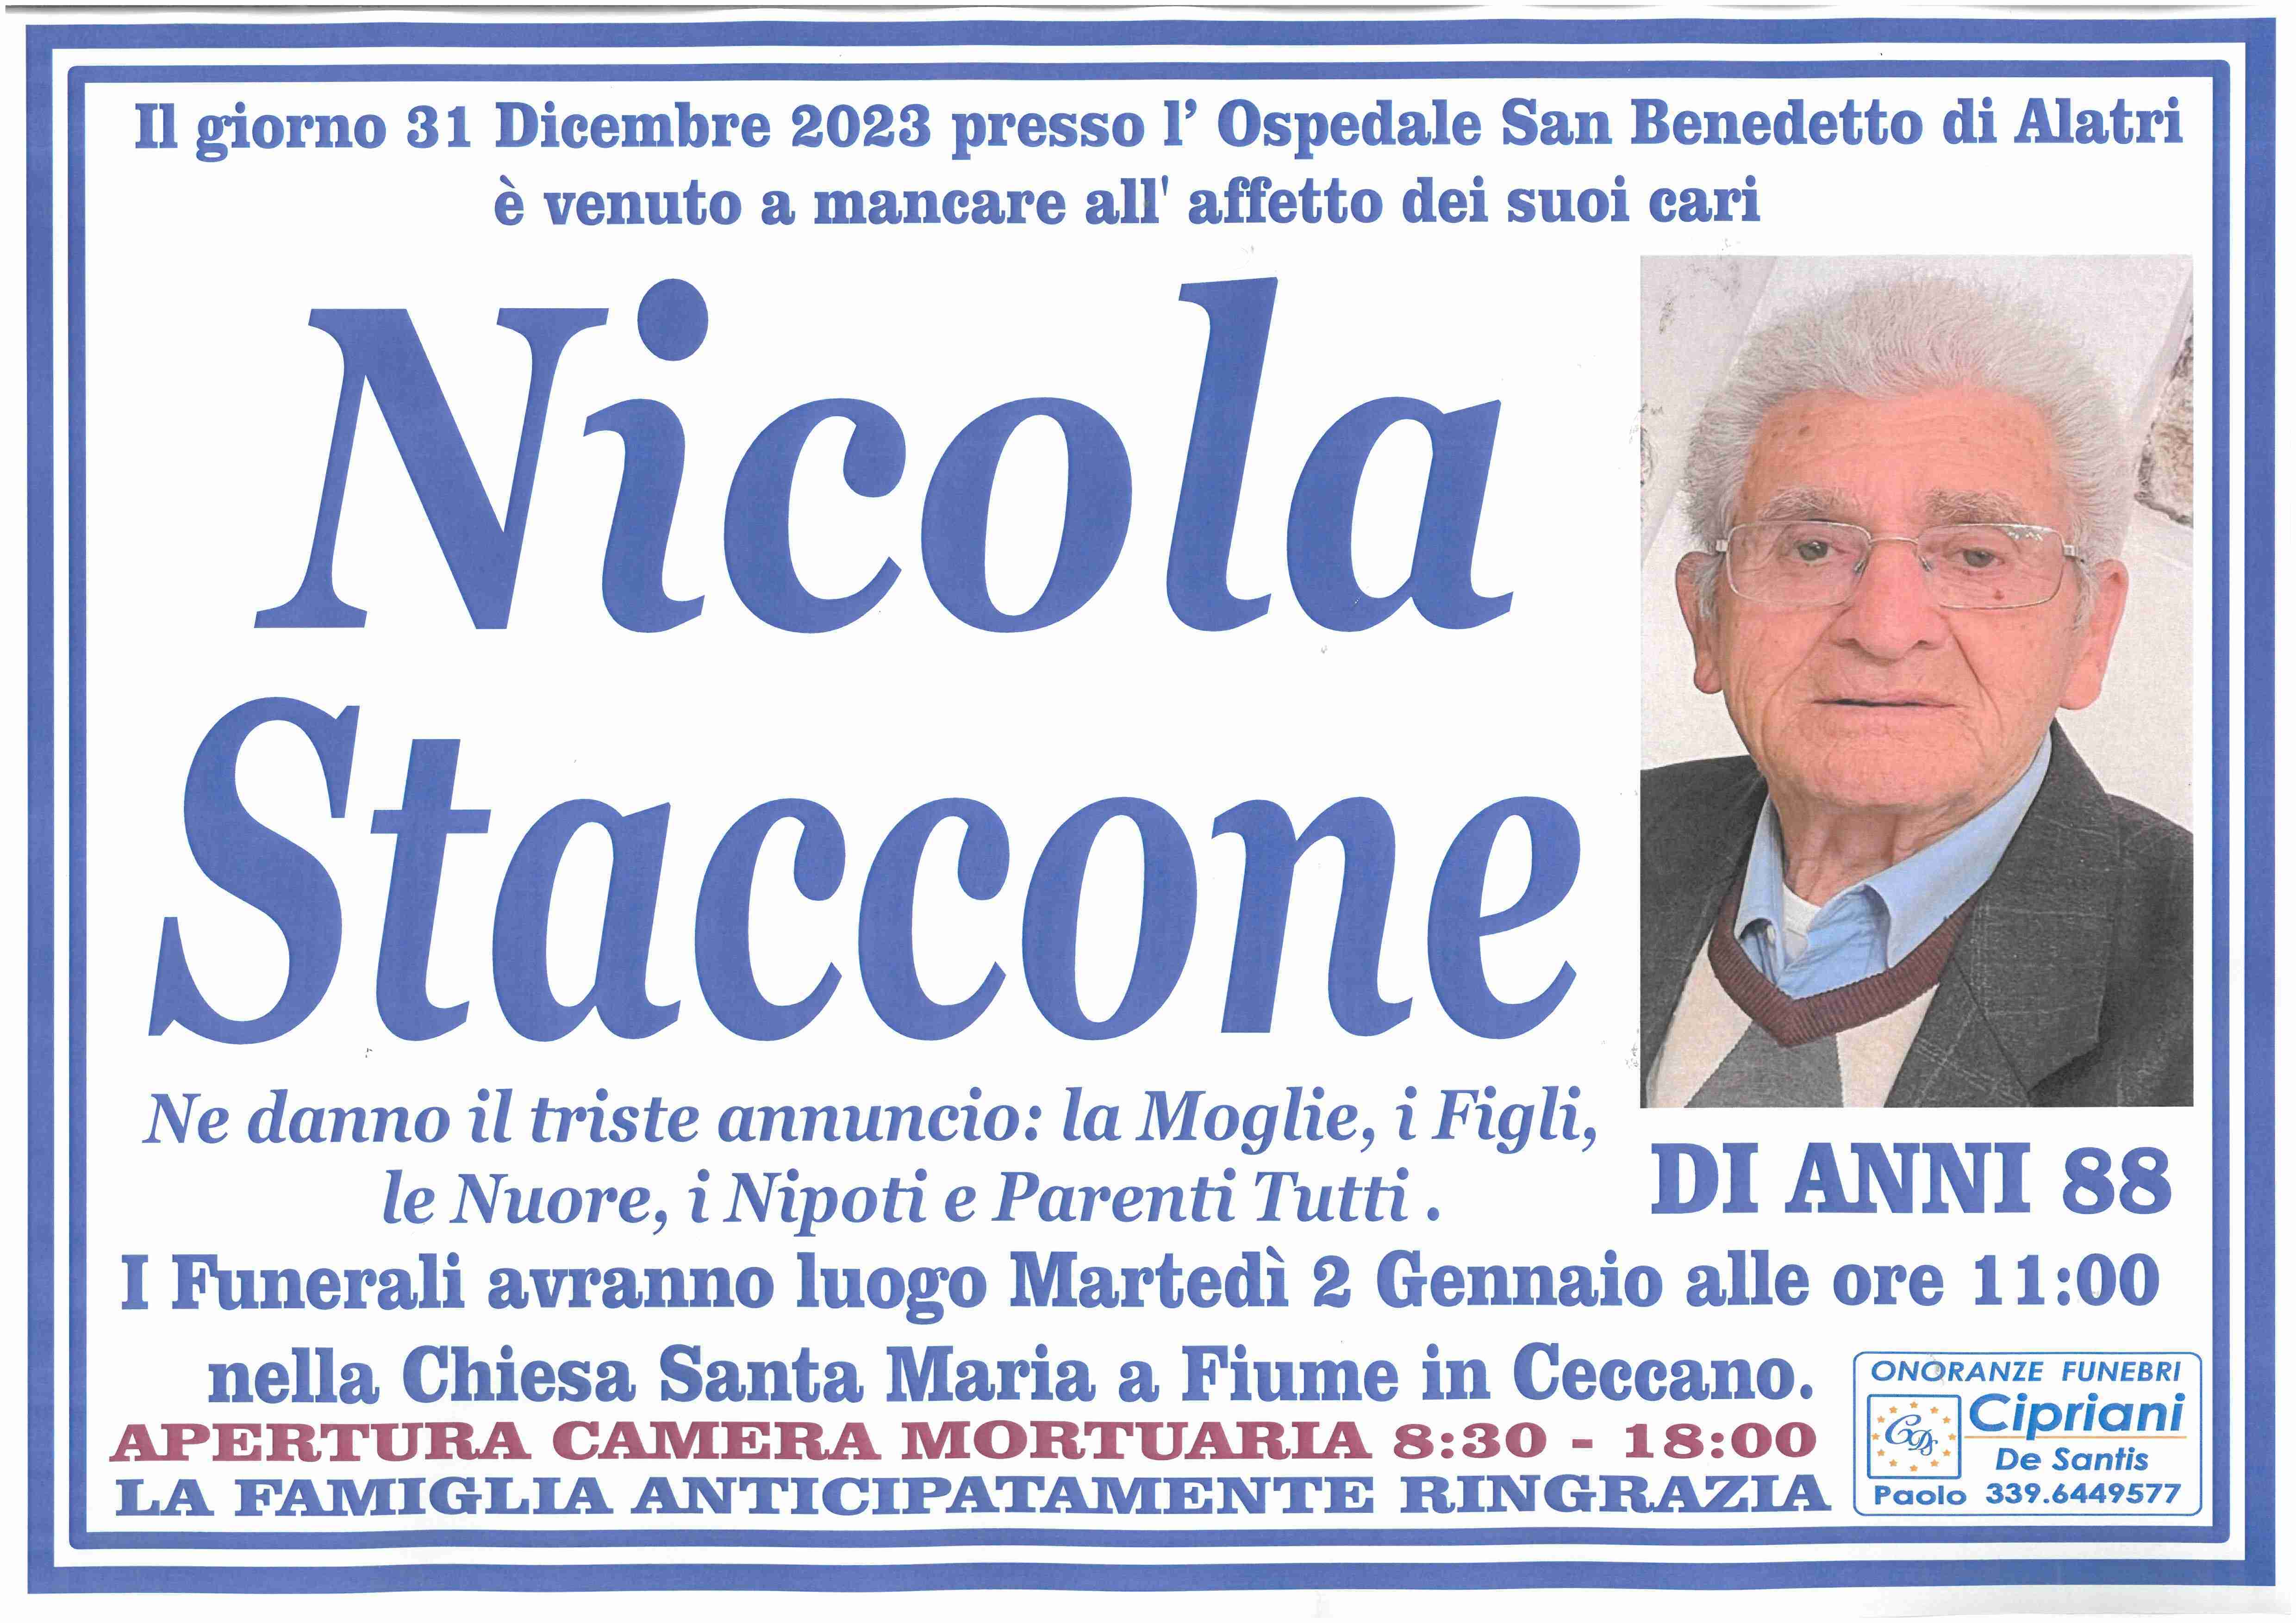 Nicola Staccone